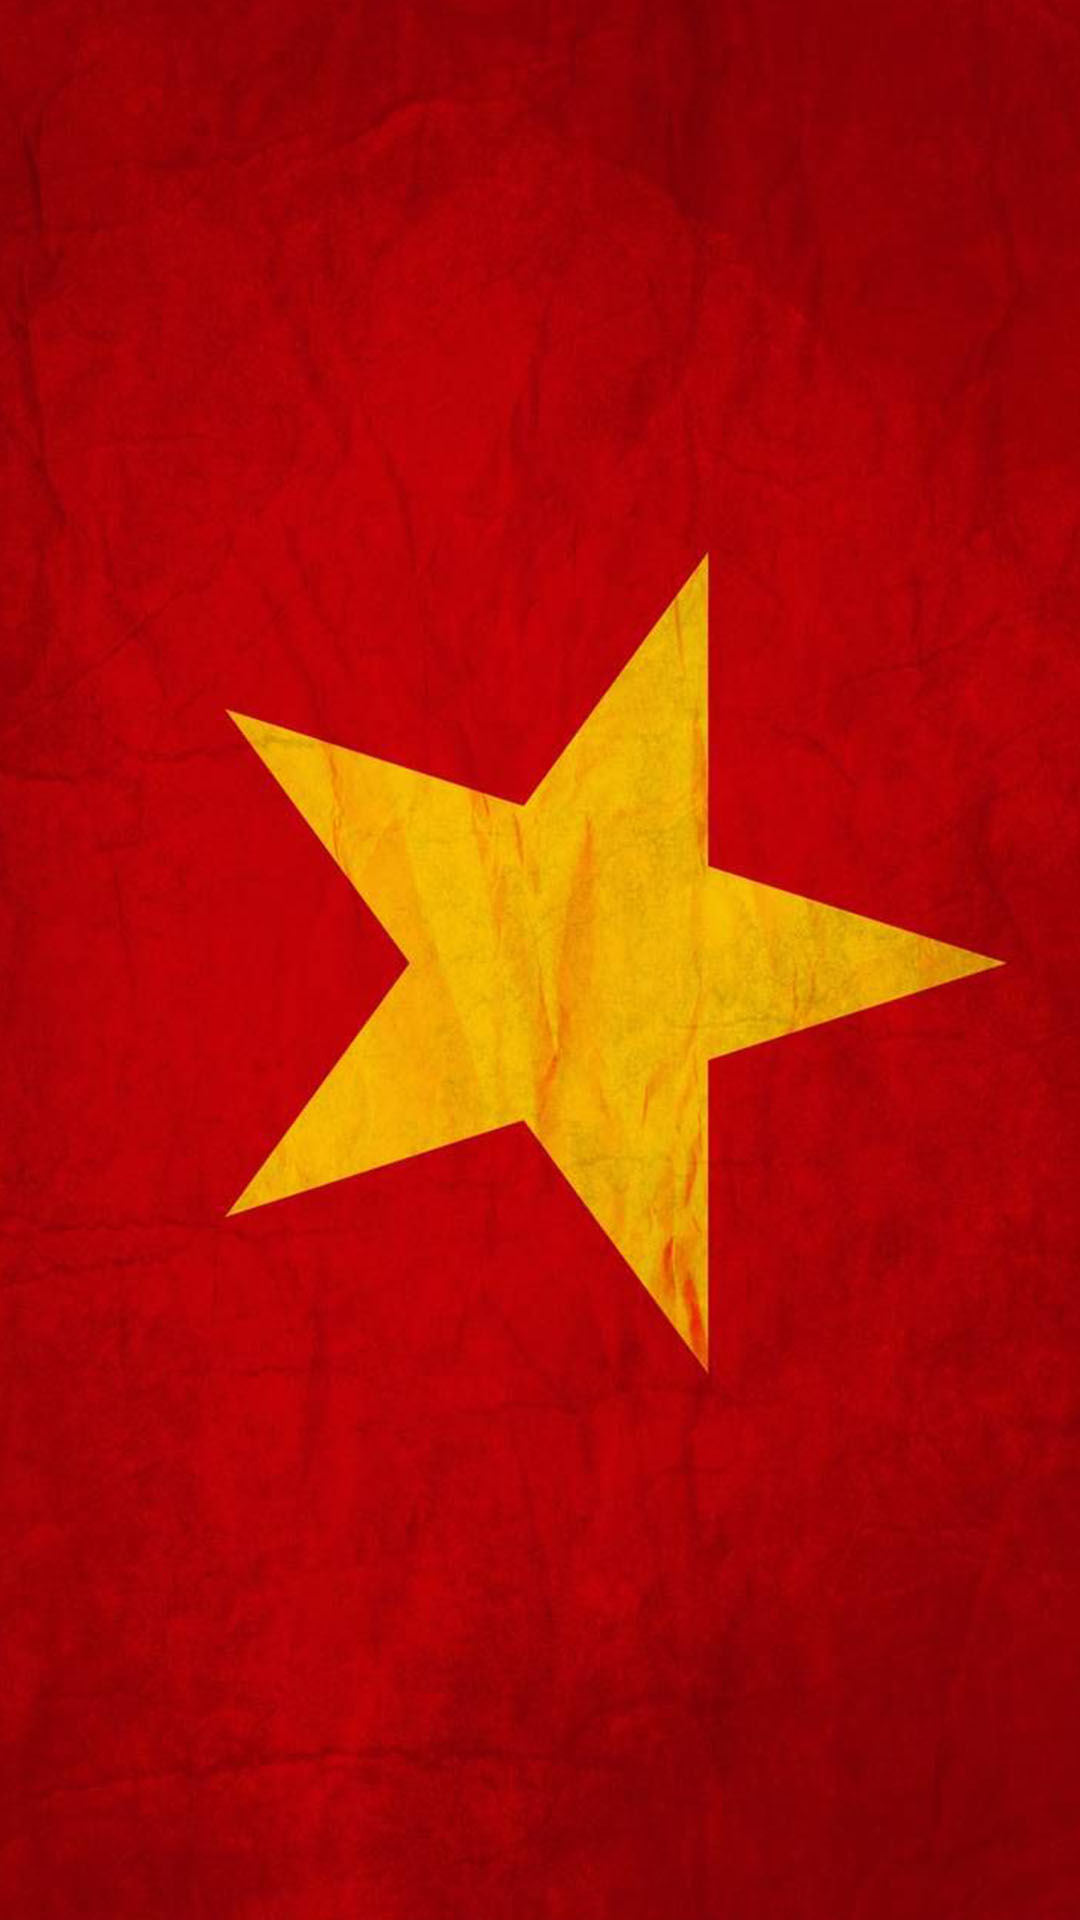 Hình nền cờ Việt Nam là một cách tuyệt vời để thể hiện tình yêu và sự tôn trọng với quốc gia của bạn. Với những bức ảnh chất lượng cao trong bộ sưu tập này, bạn có thể luôn cảm thấy hãnh diện và tự tin về quốc gia mình.